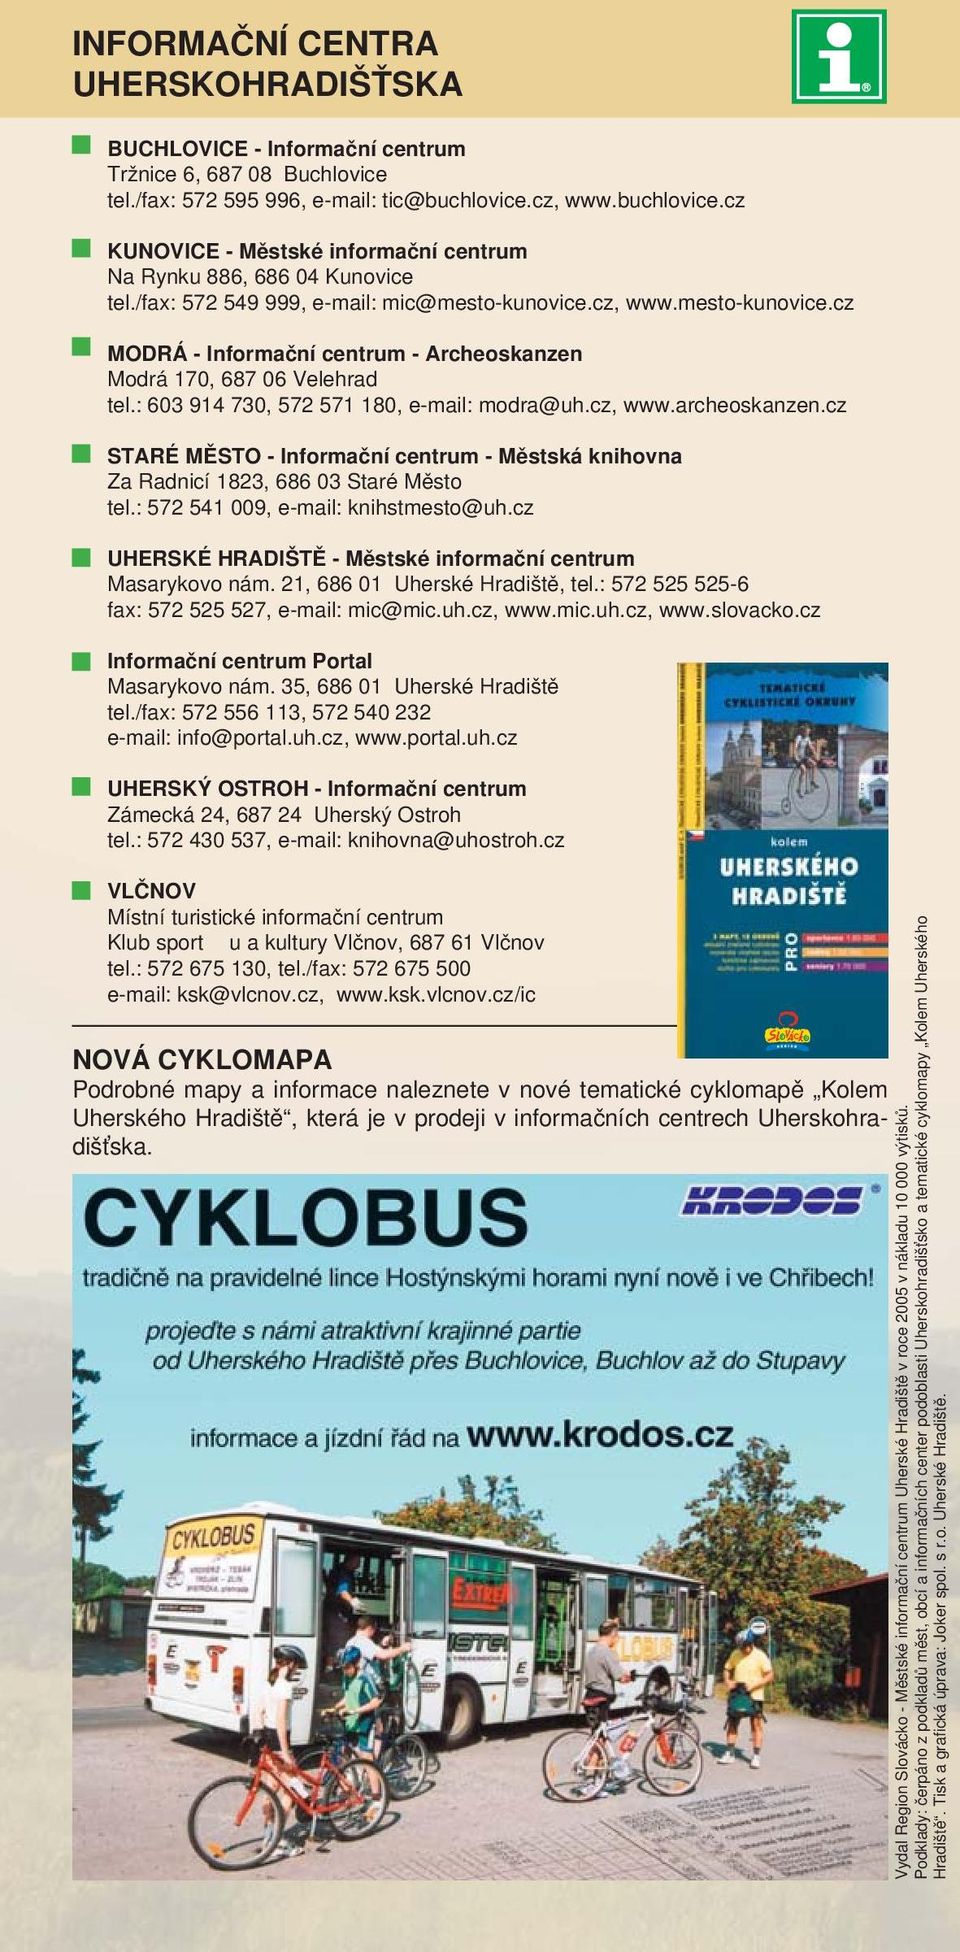 cz, www.mesto-kunovice.cz MODRÁ - Informační centrum - Archeoskanzen Modrá 170, 687 06 Velehrad tel.: 603 914 730, 572 571 180, e-mail: modra@uh.cz, www.archeoskanzen.